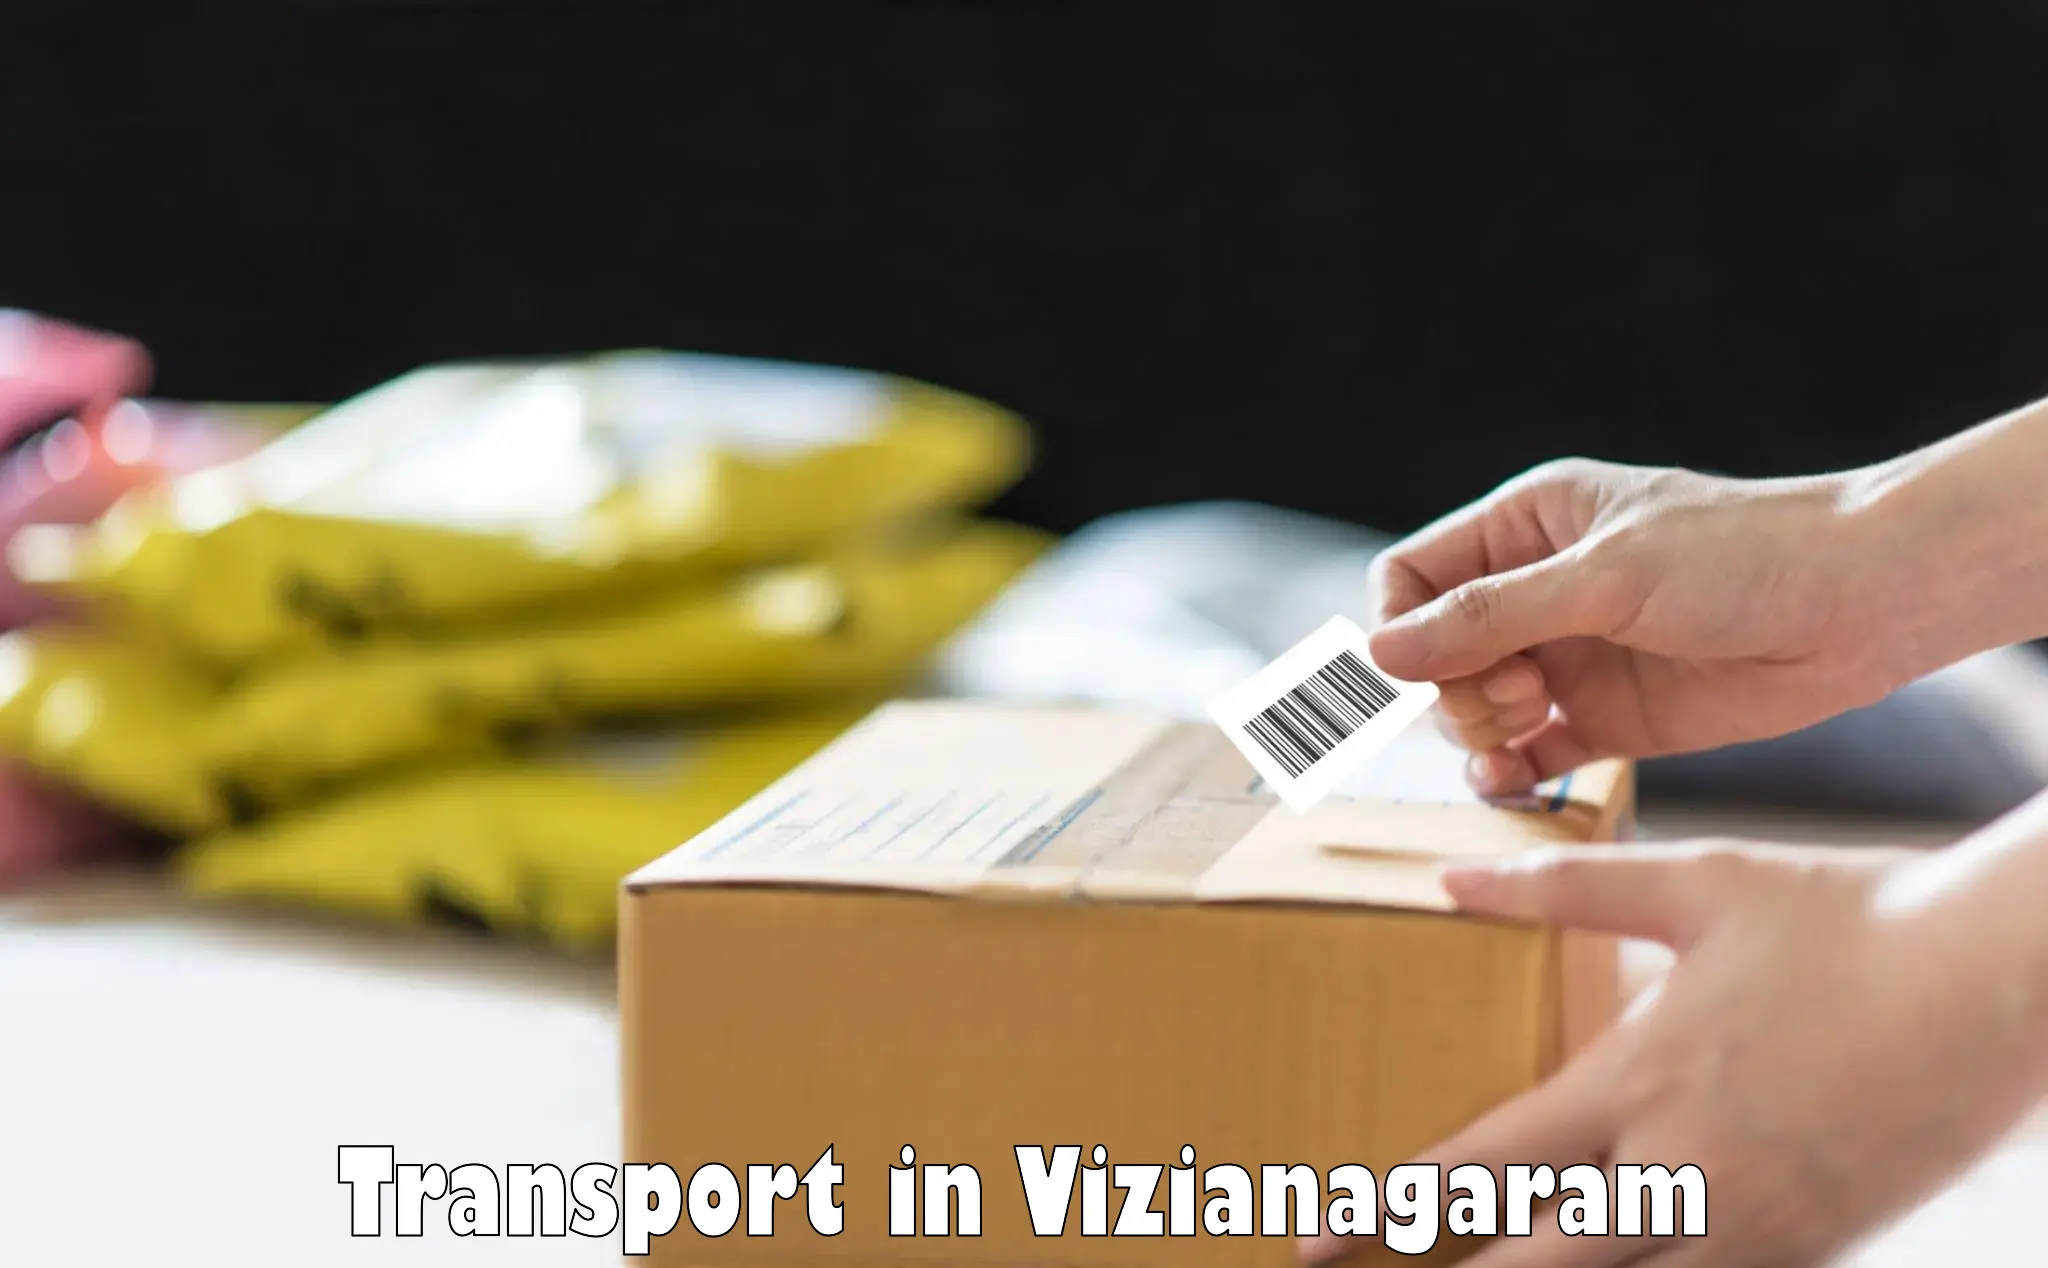 Cargo transportation services in Vizianagaram